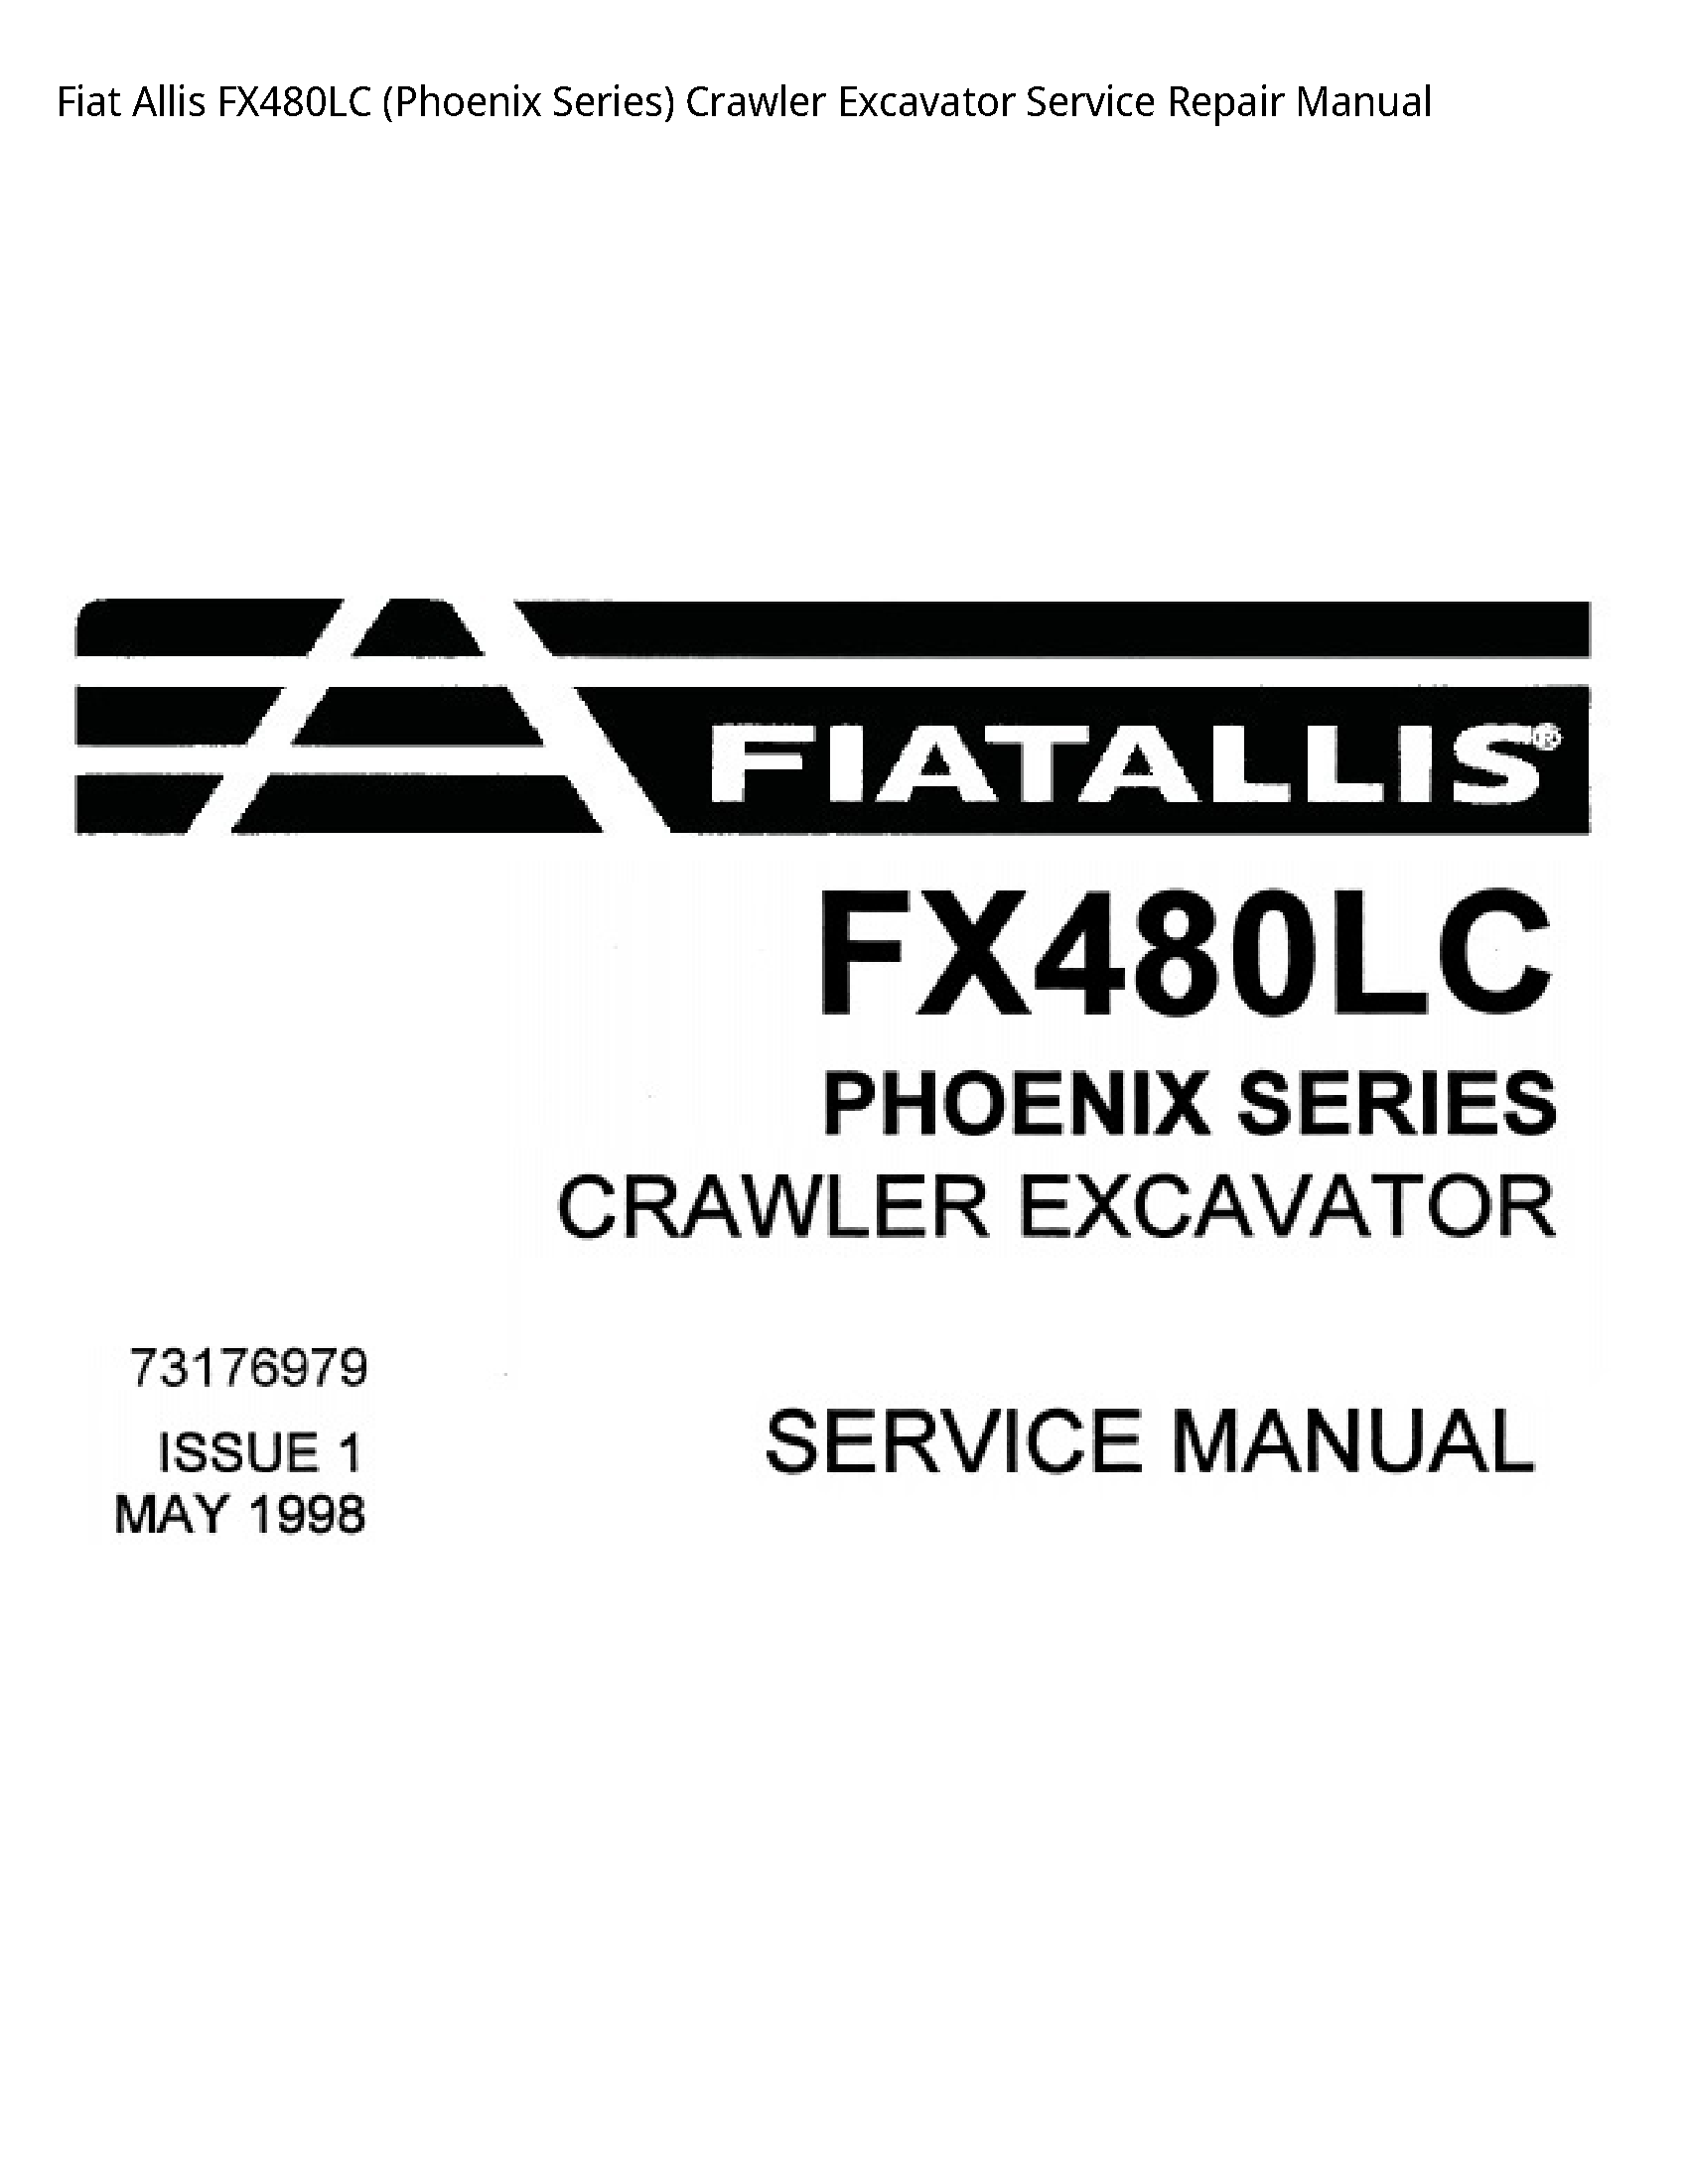 Fiat Allis FX480LC (Phoenix Series) Crawler Excavator manual